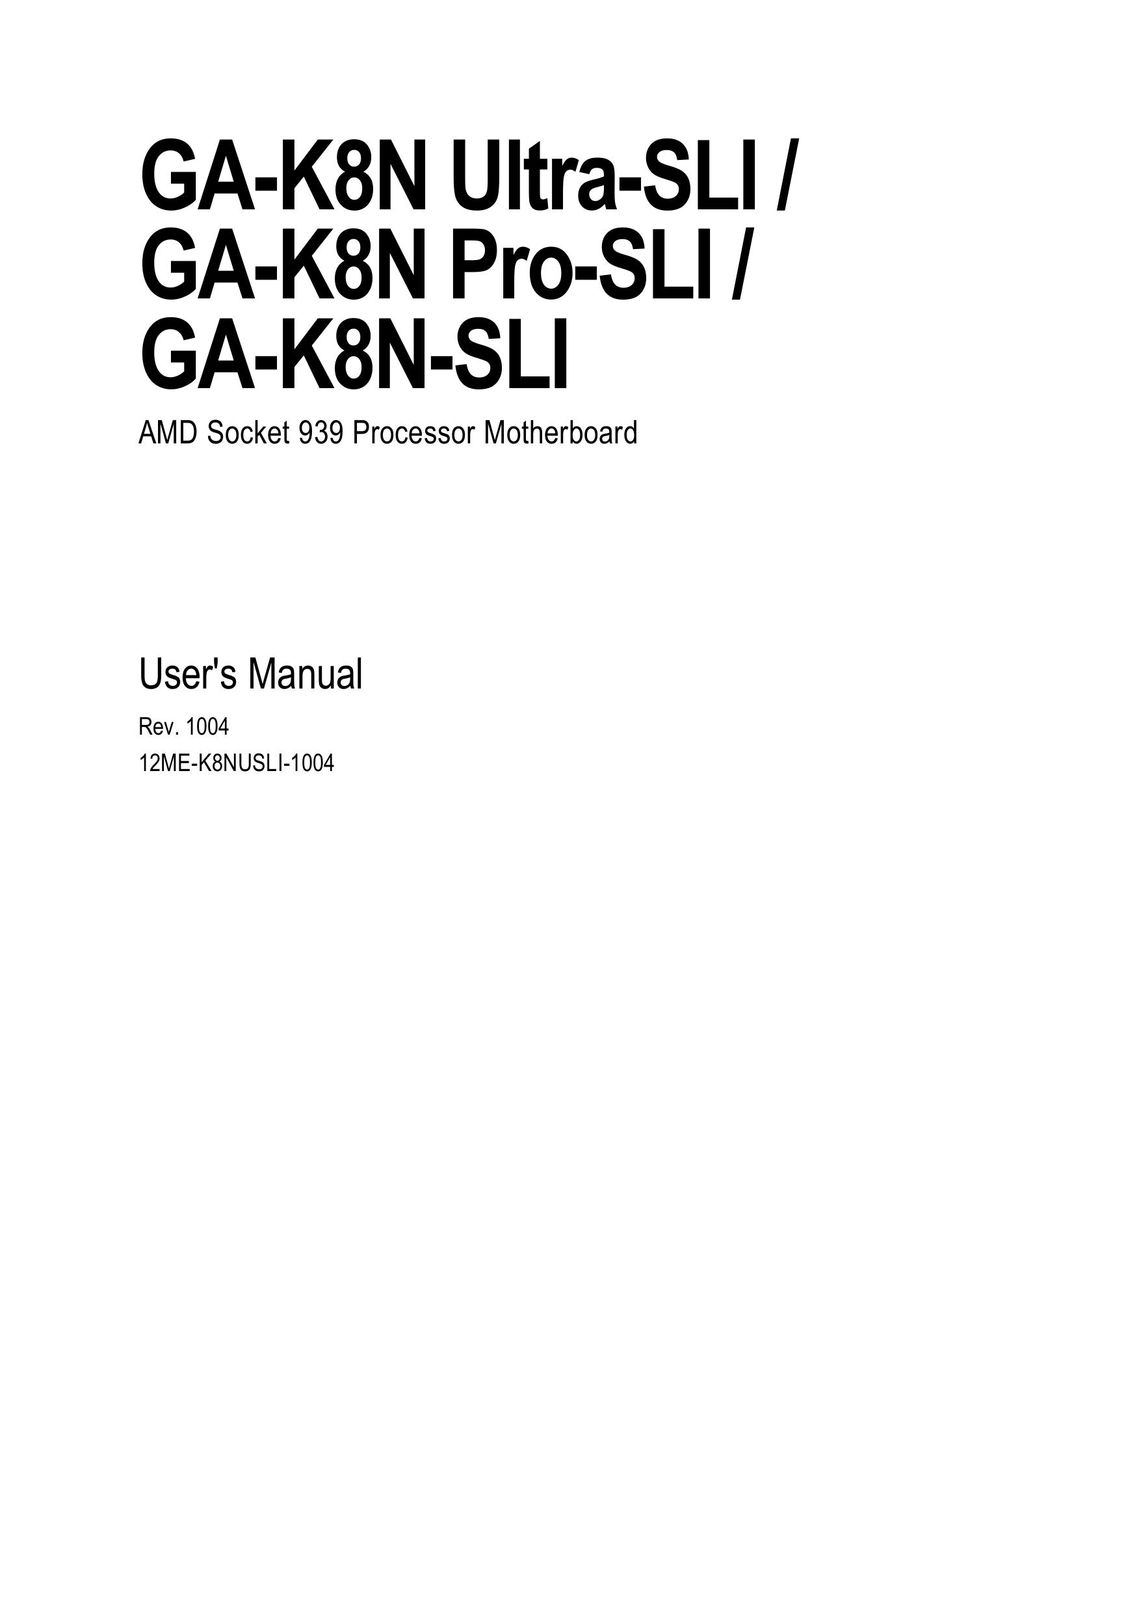 Gigabyte GA-K8N-SLI Computer Hardware User Manual